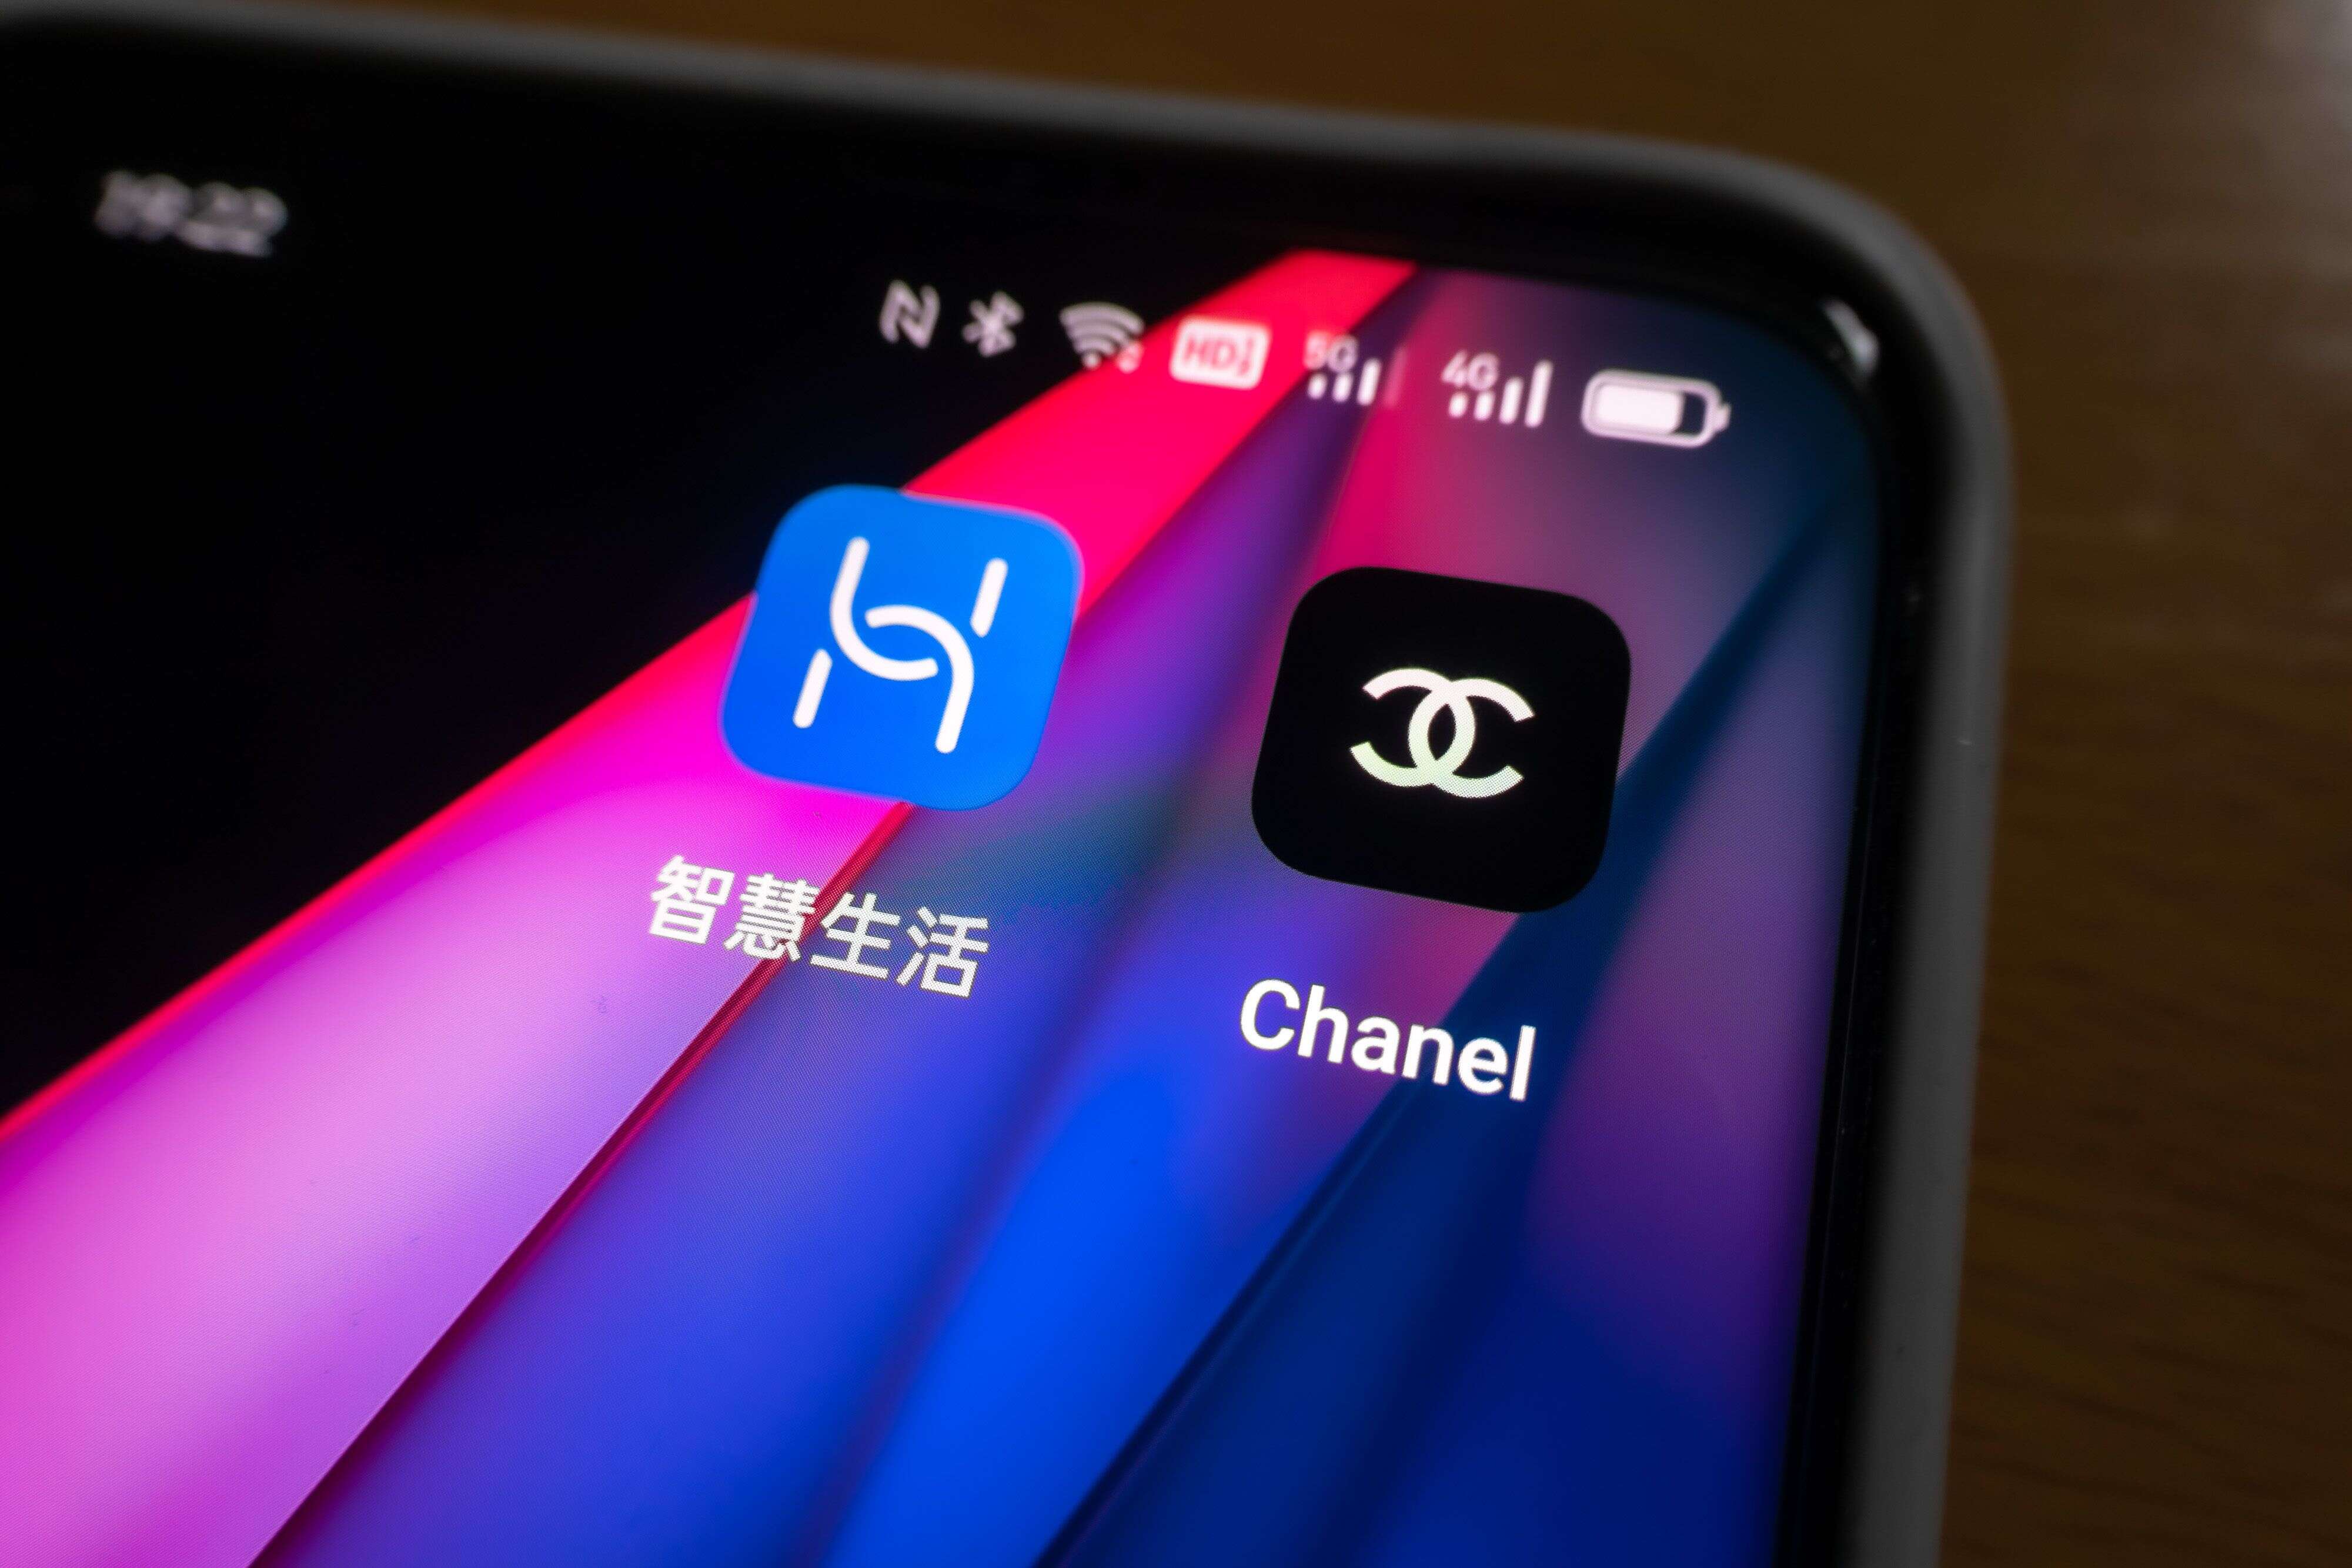 Le logo de Huawei (à gauche) est vertical. Celui de Chanel (à droite), horizontal.